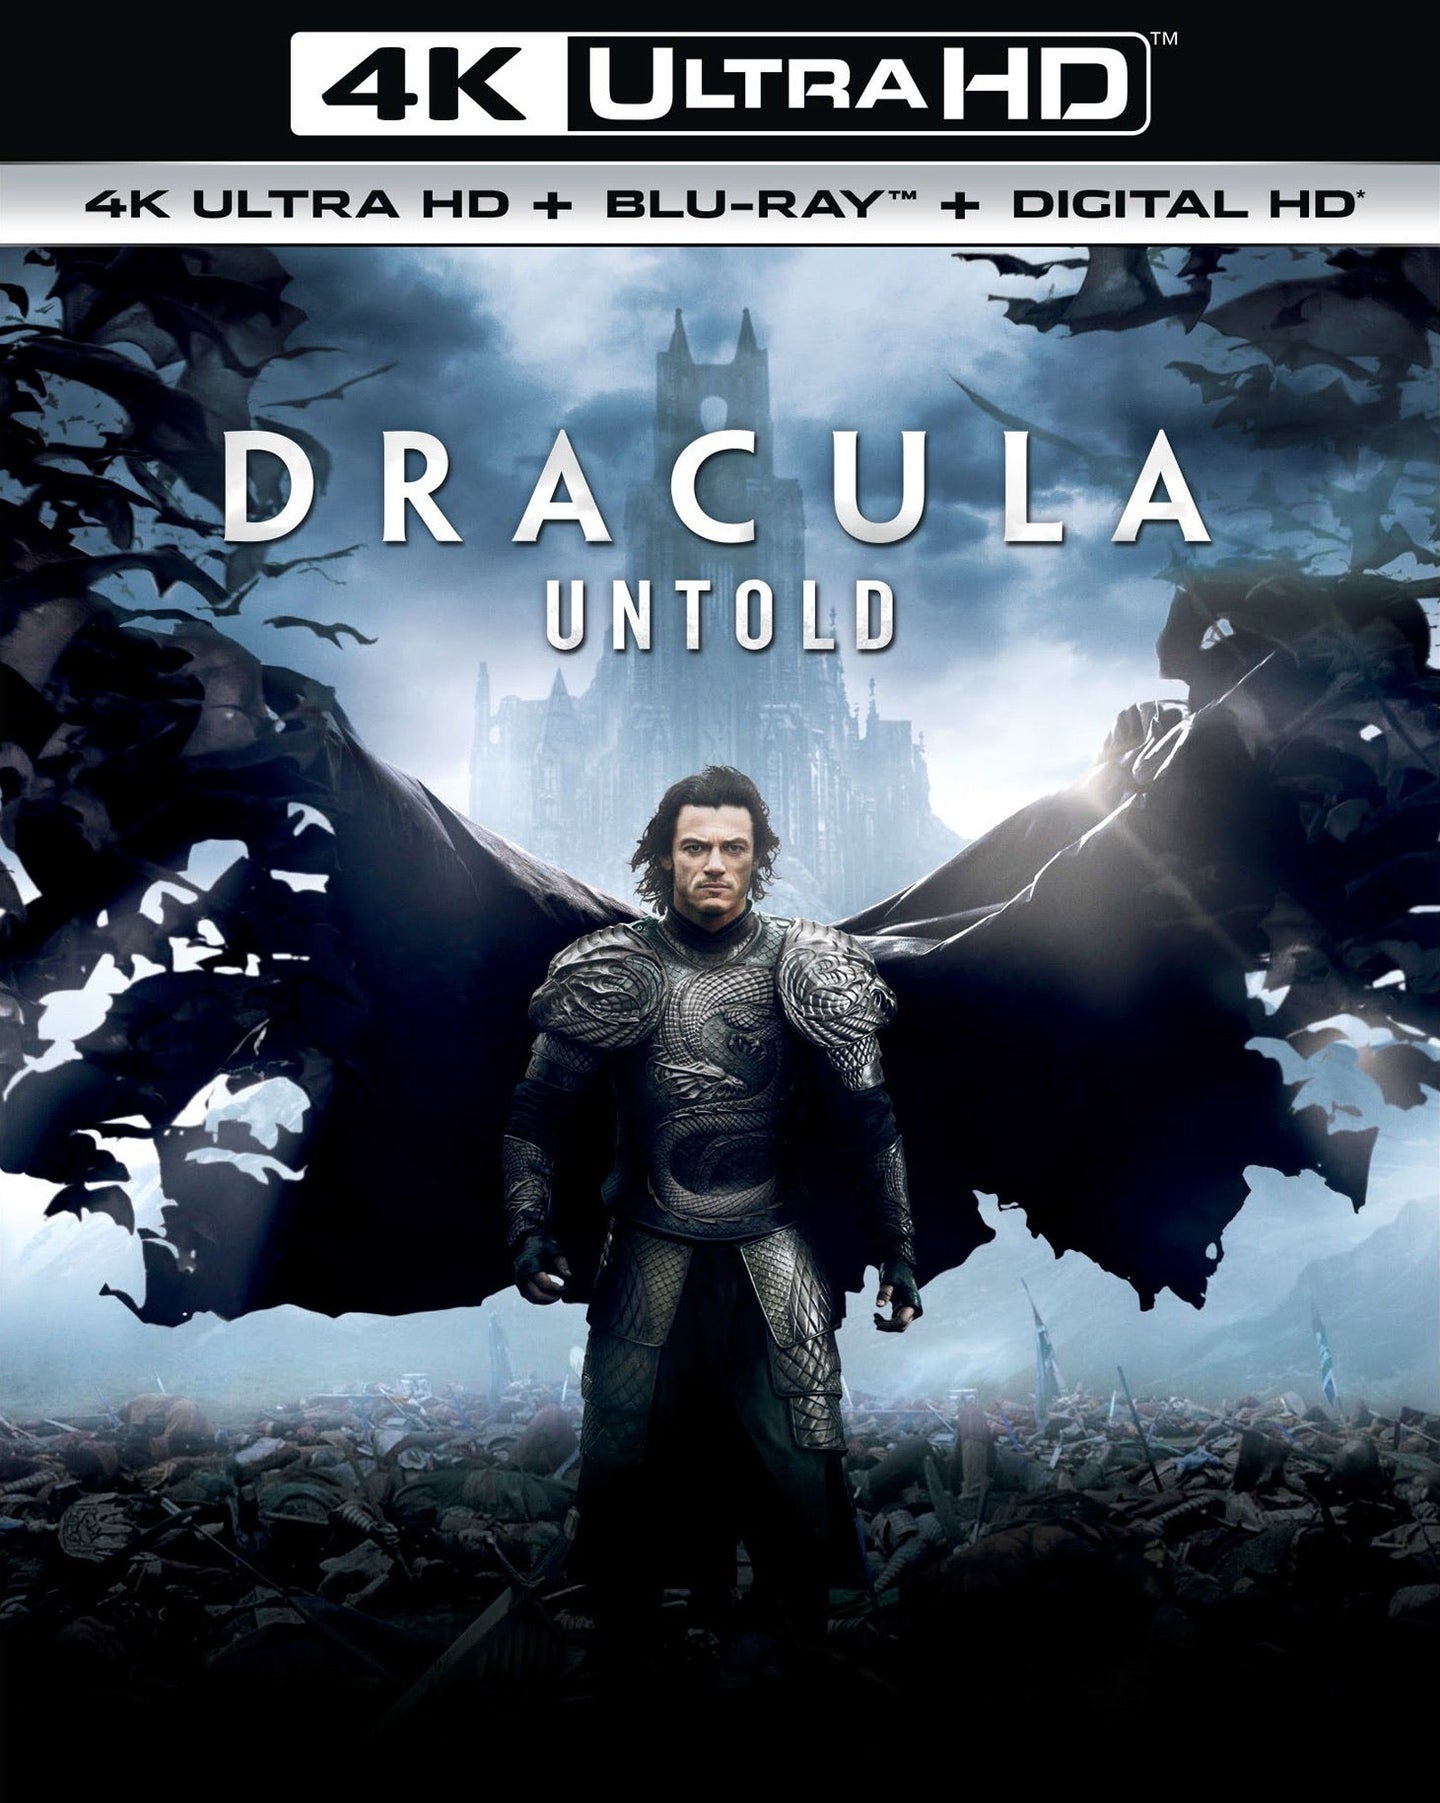 Dracula Untold (2014) Vudu or Movies Anywhere 4K code